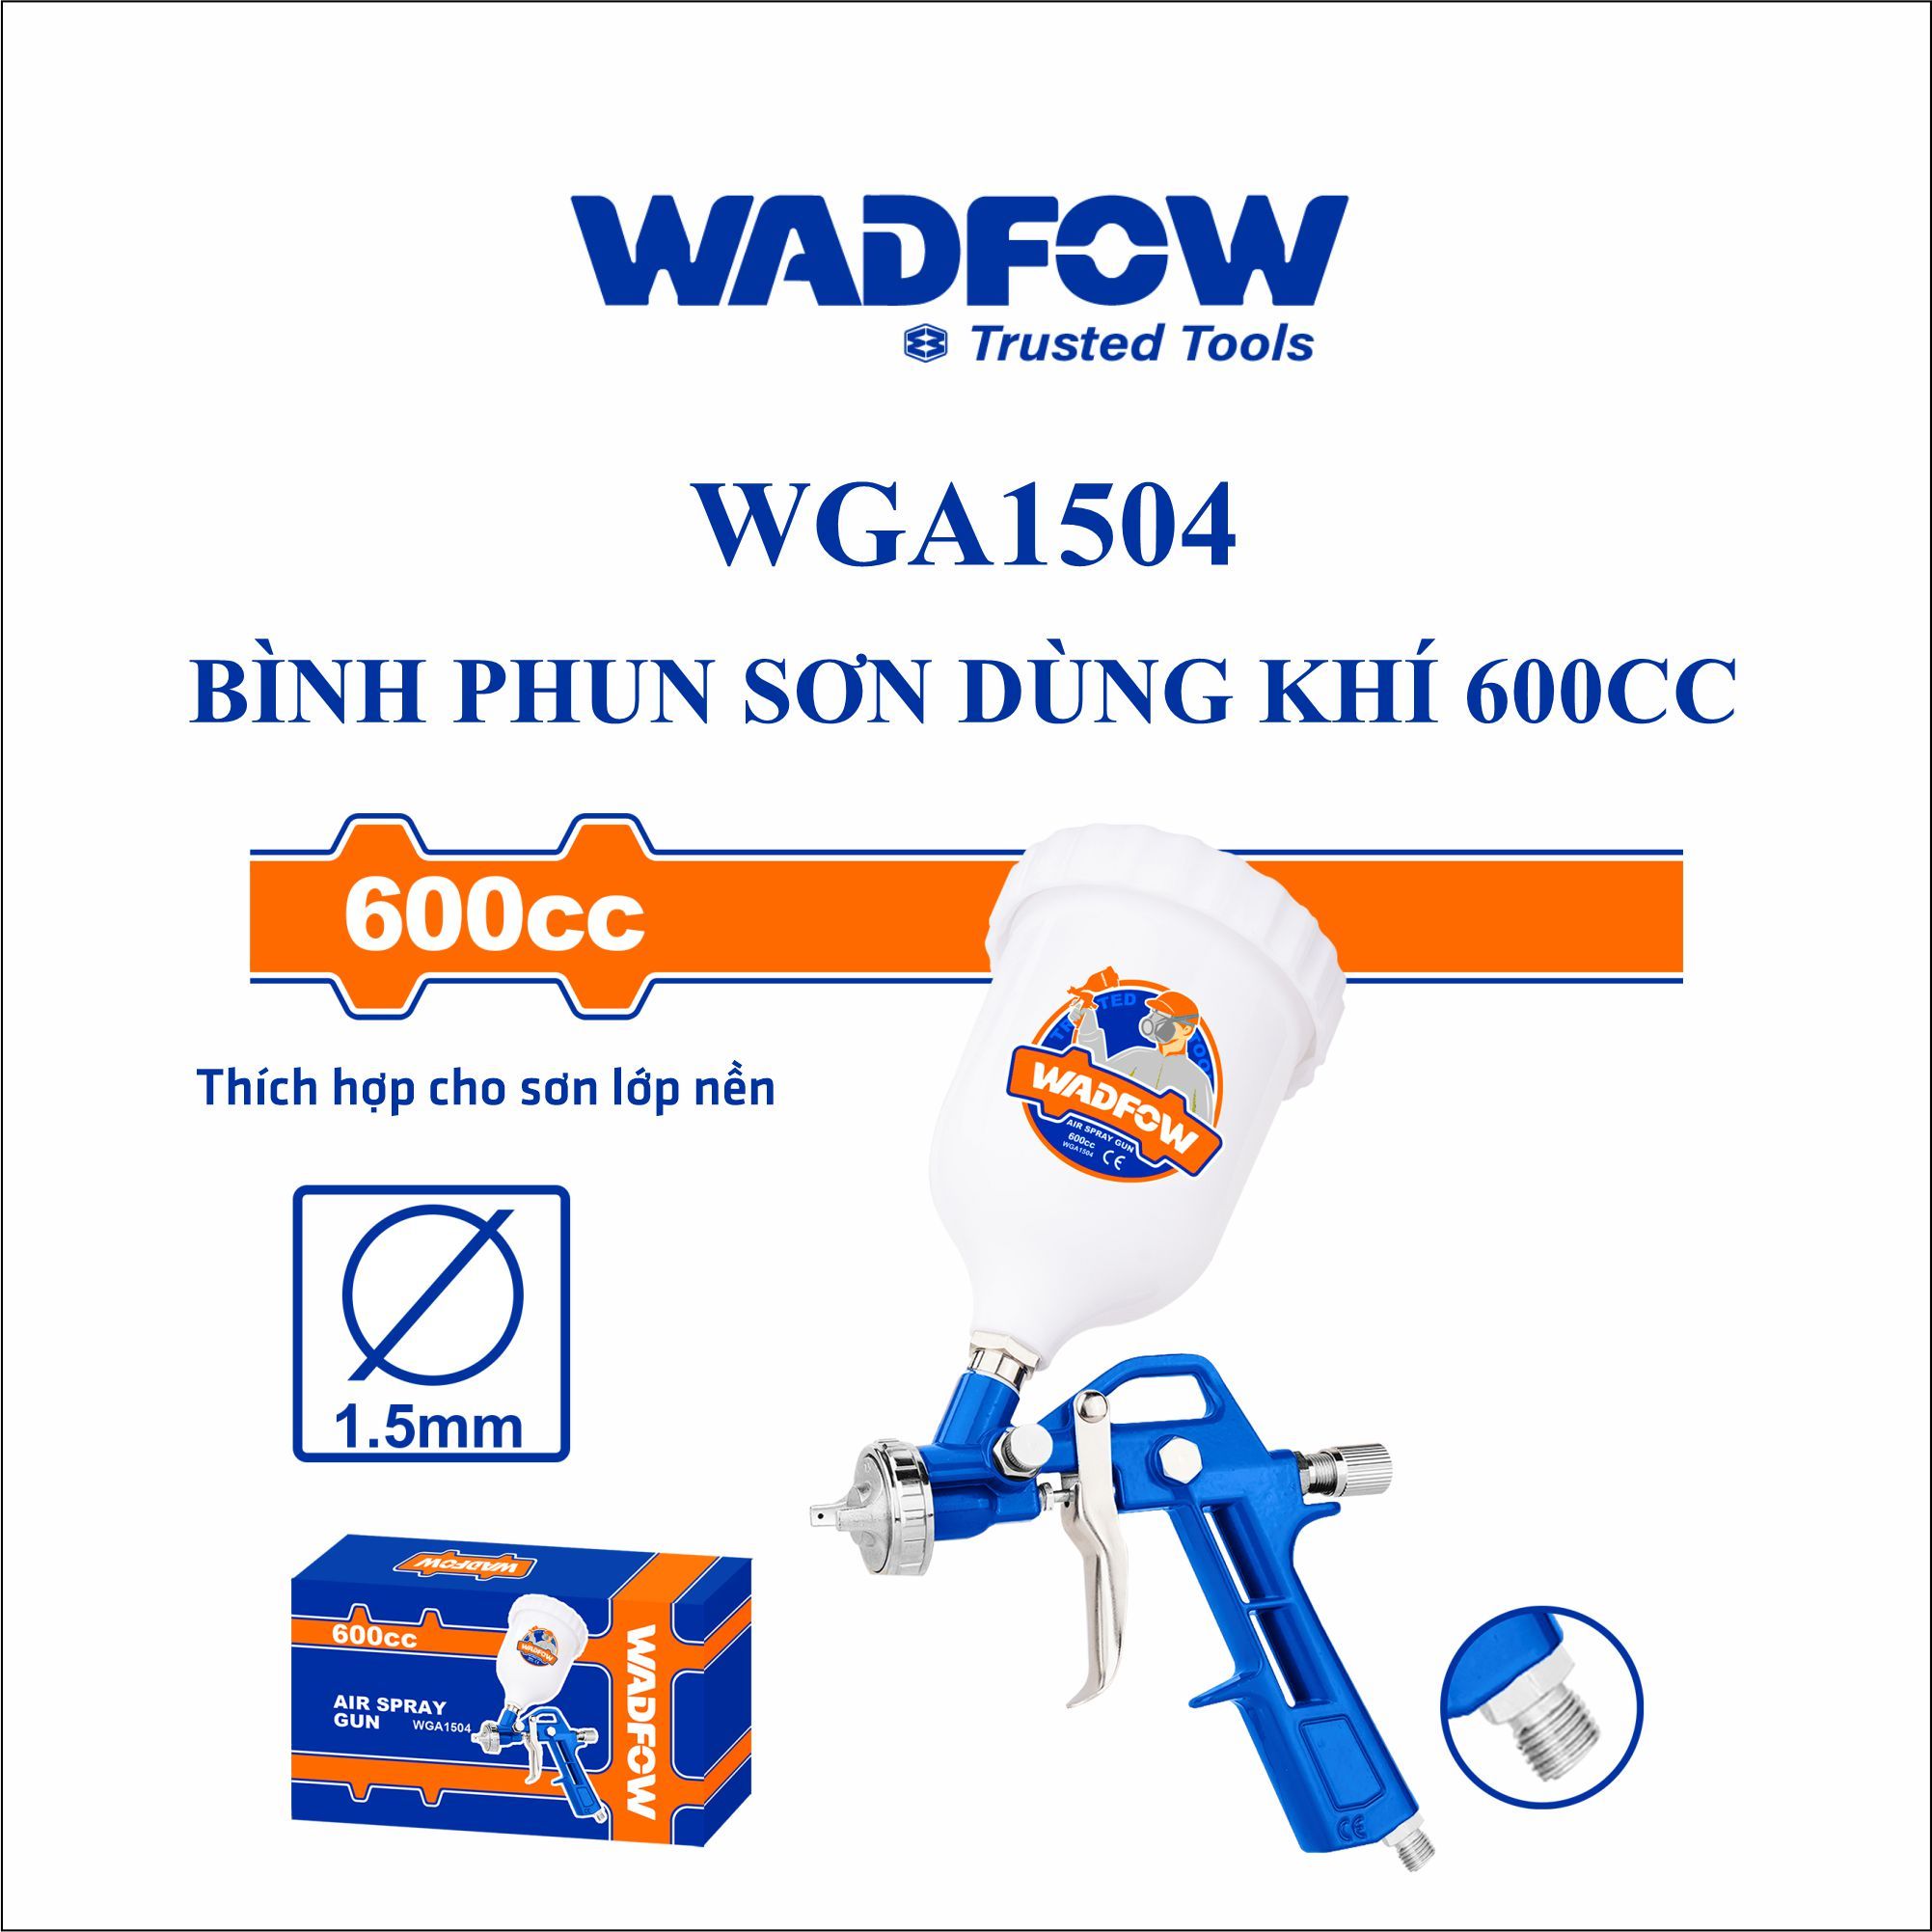  Bình phun sơn dùng hơi  600cc WADFOW WGA1504 